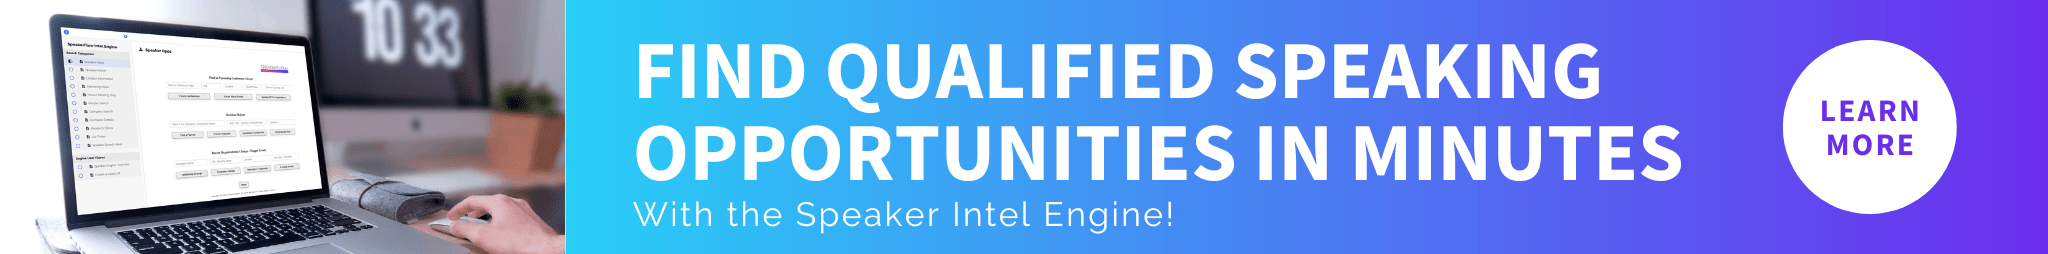 Intel Engine Banner Ad (2) - SpeakerFlow